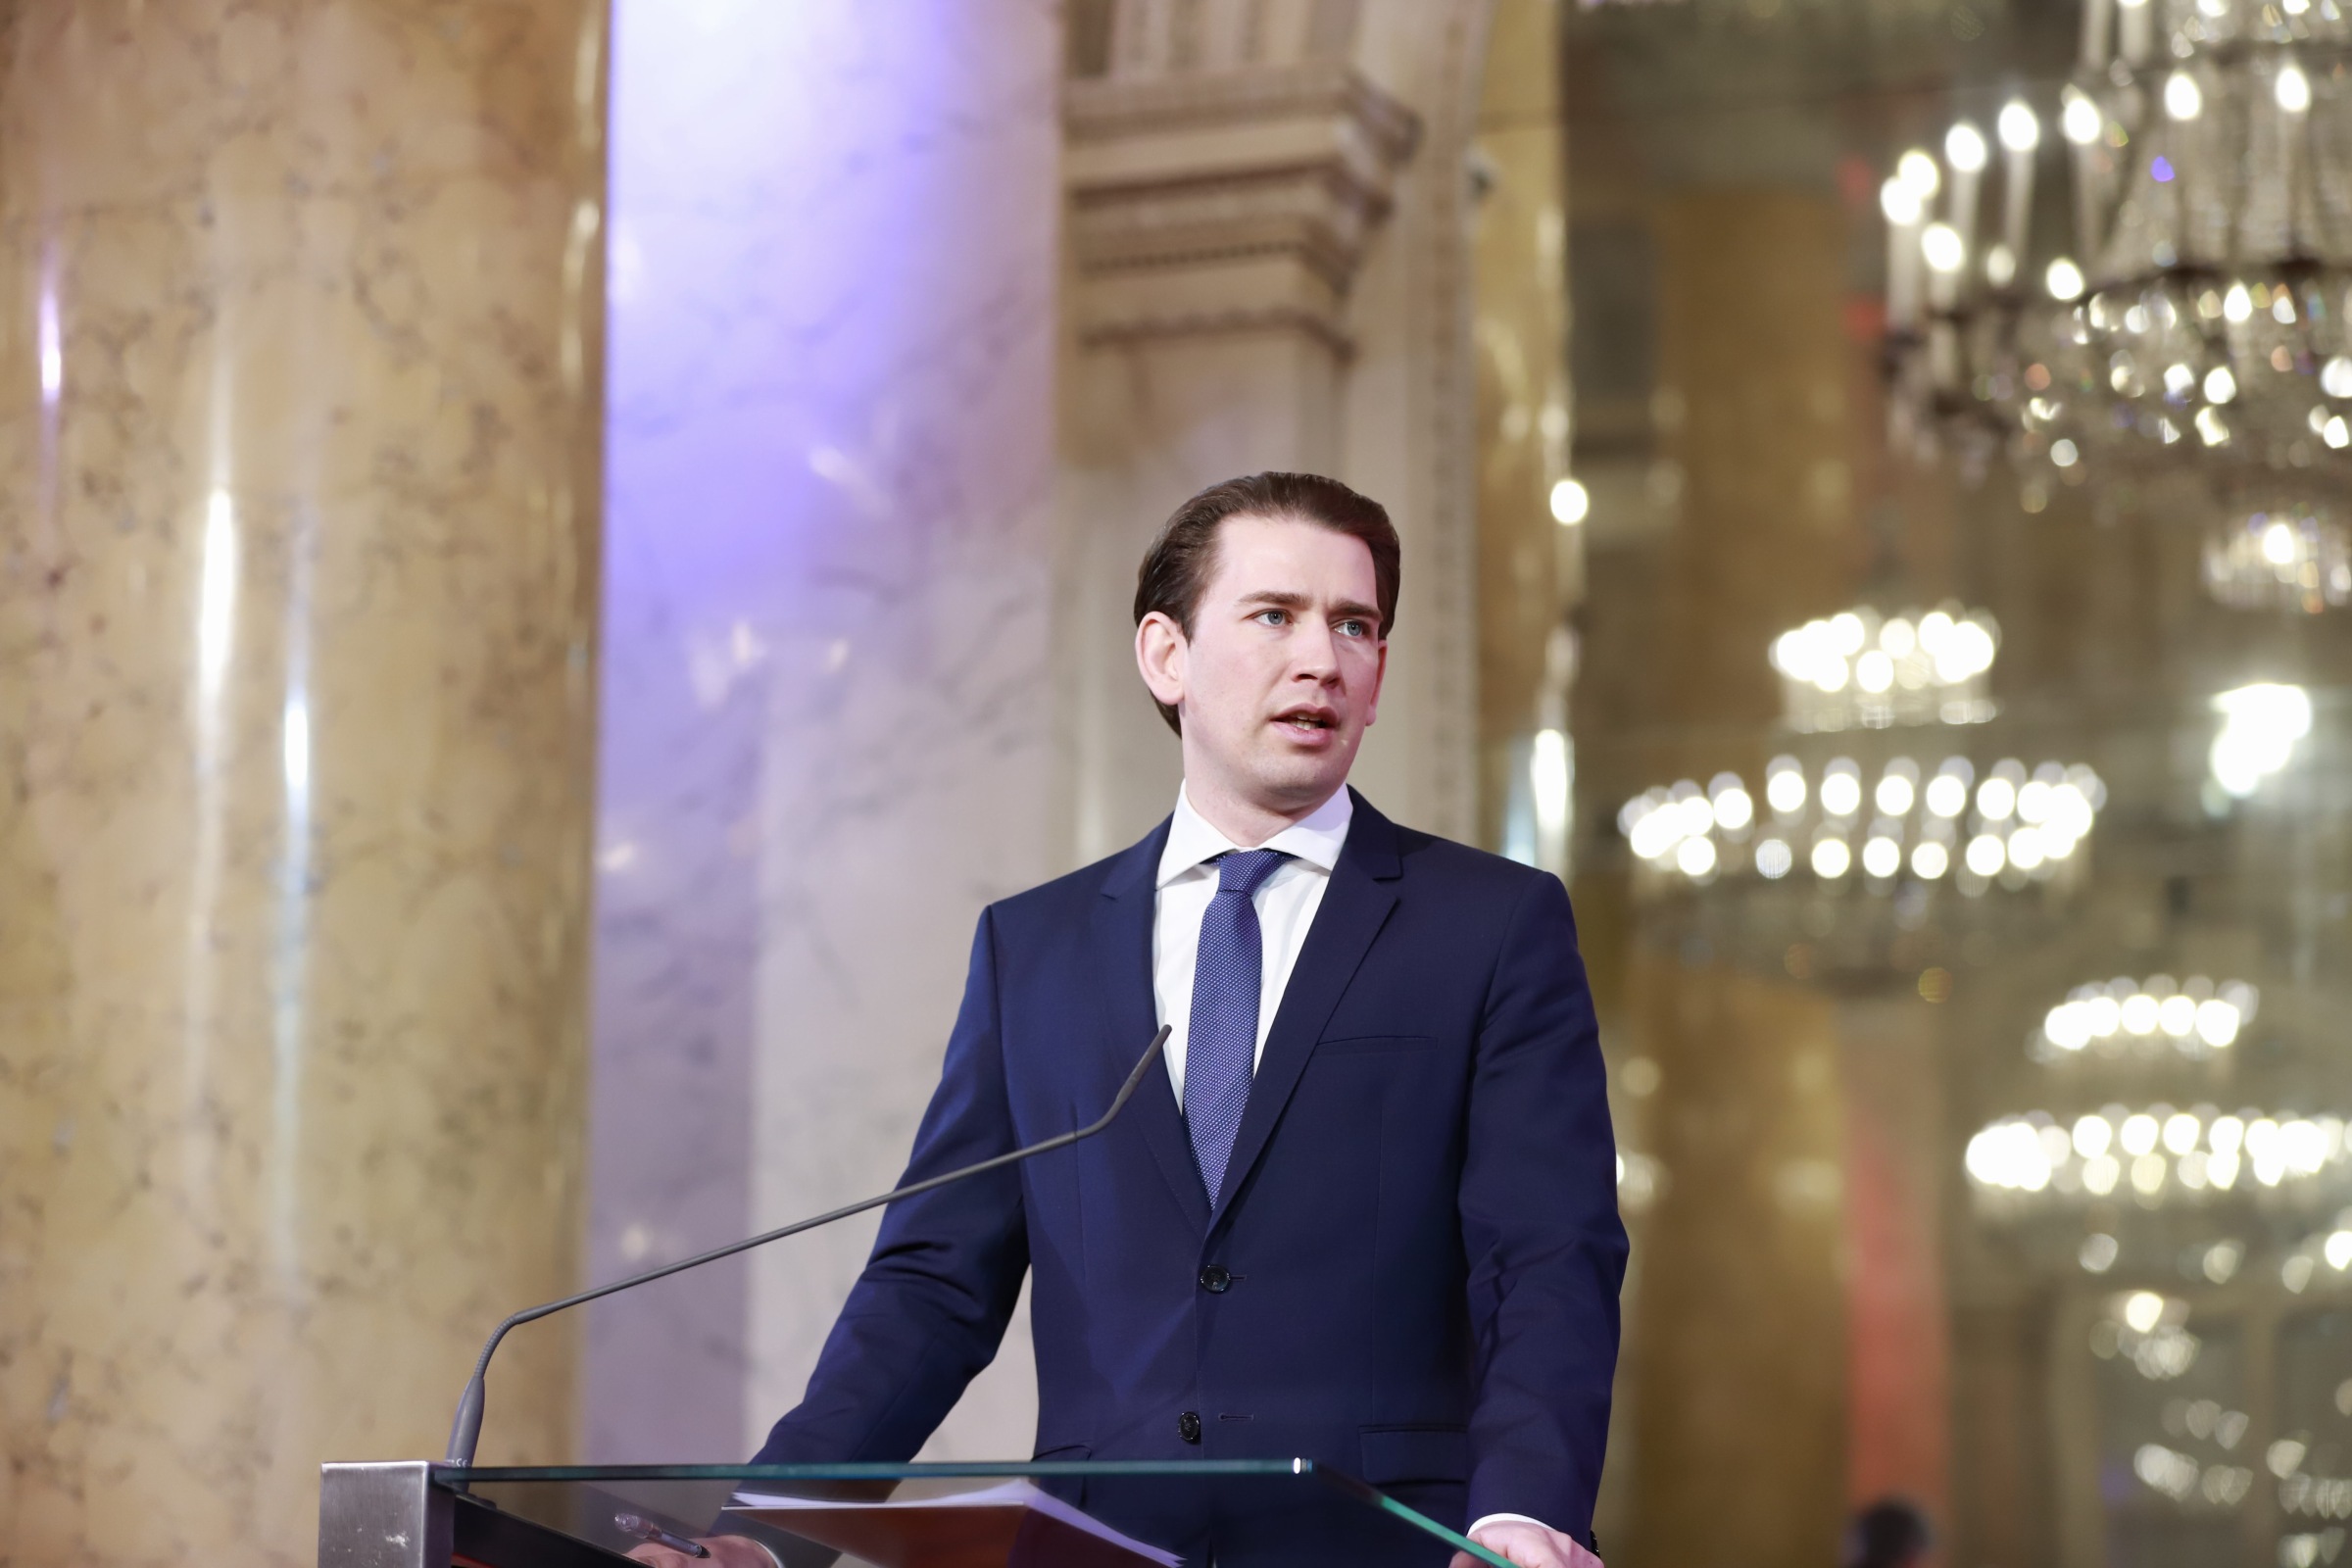 BRZA AKCIJA ZA NASTAVAK ISTRAGE: Državno odvjetništvo traži od austrijskog parlamenta da ukine Kurzu zastupnički imunitet